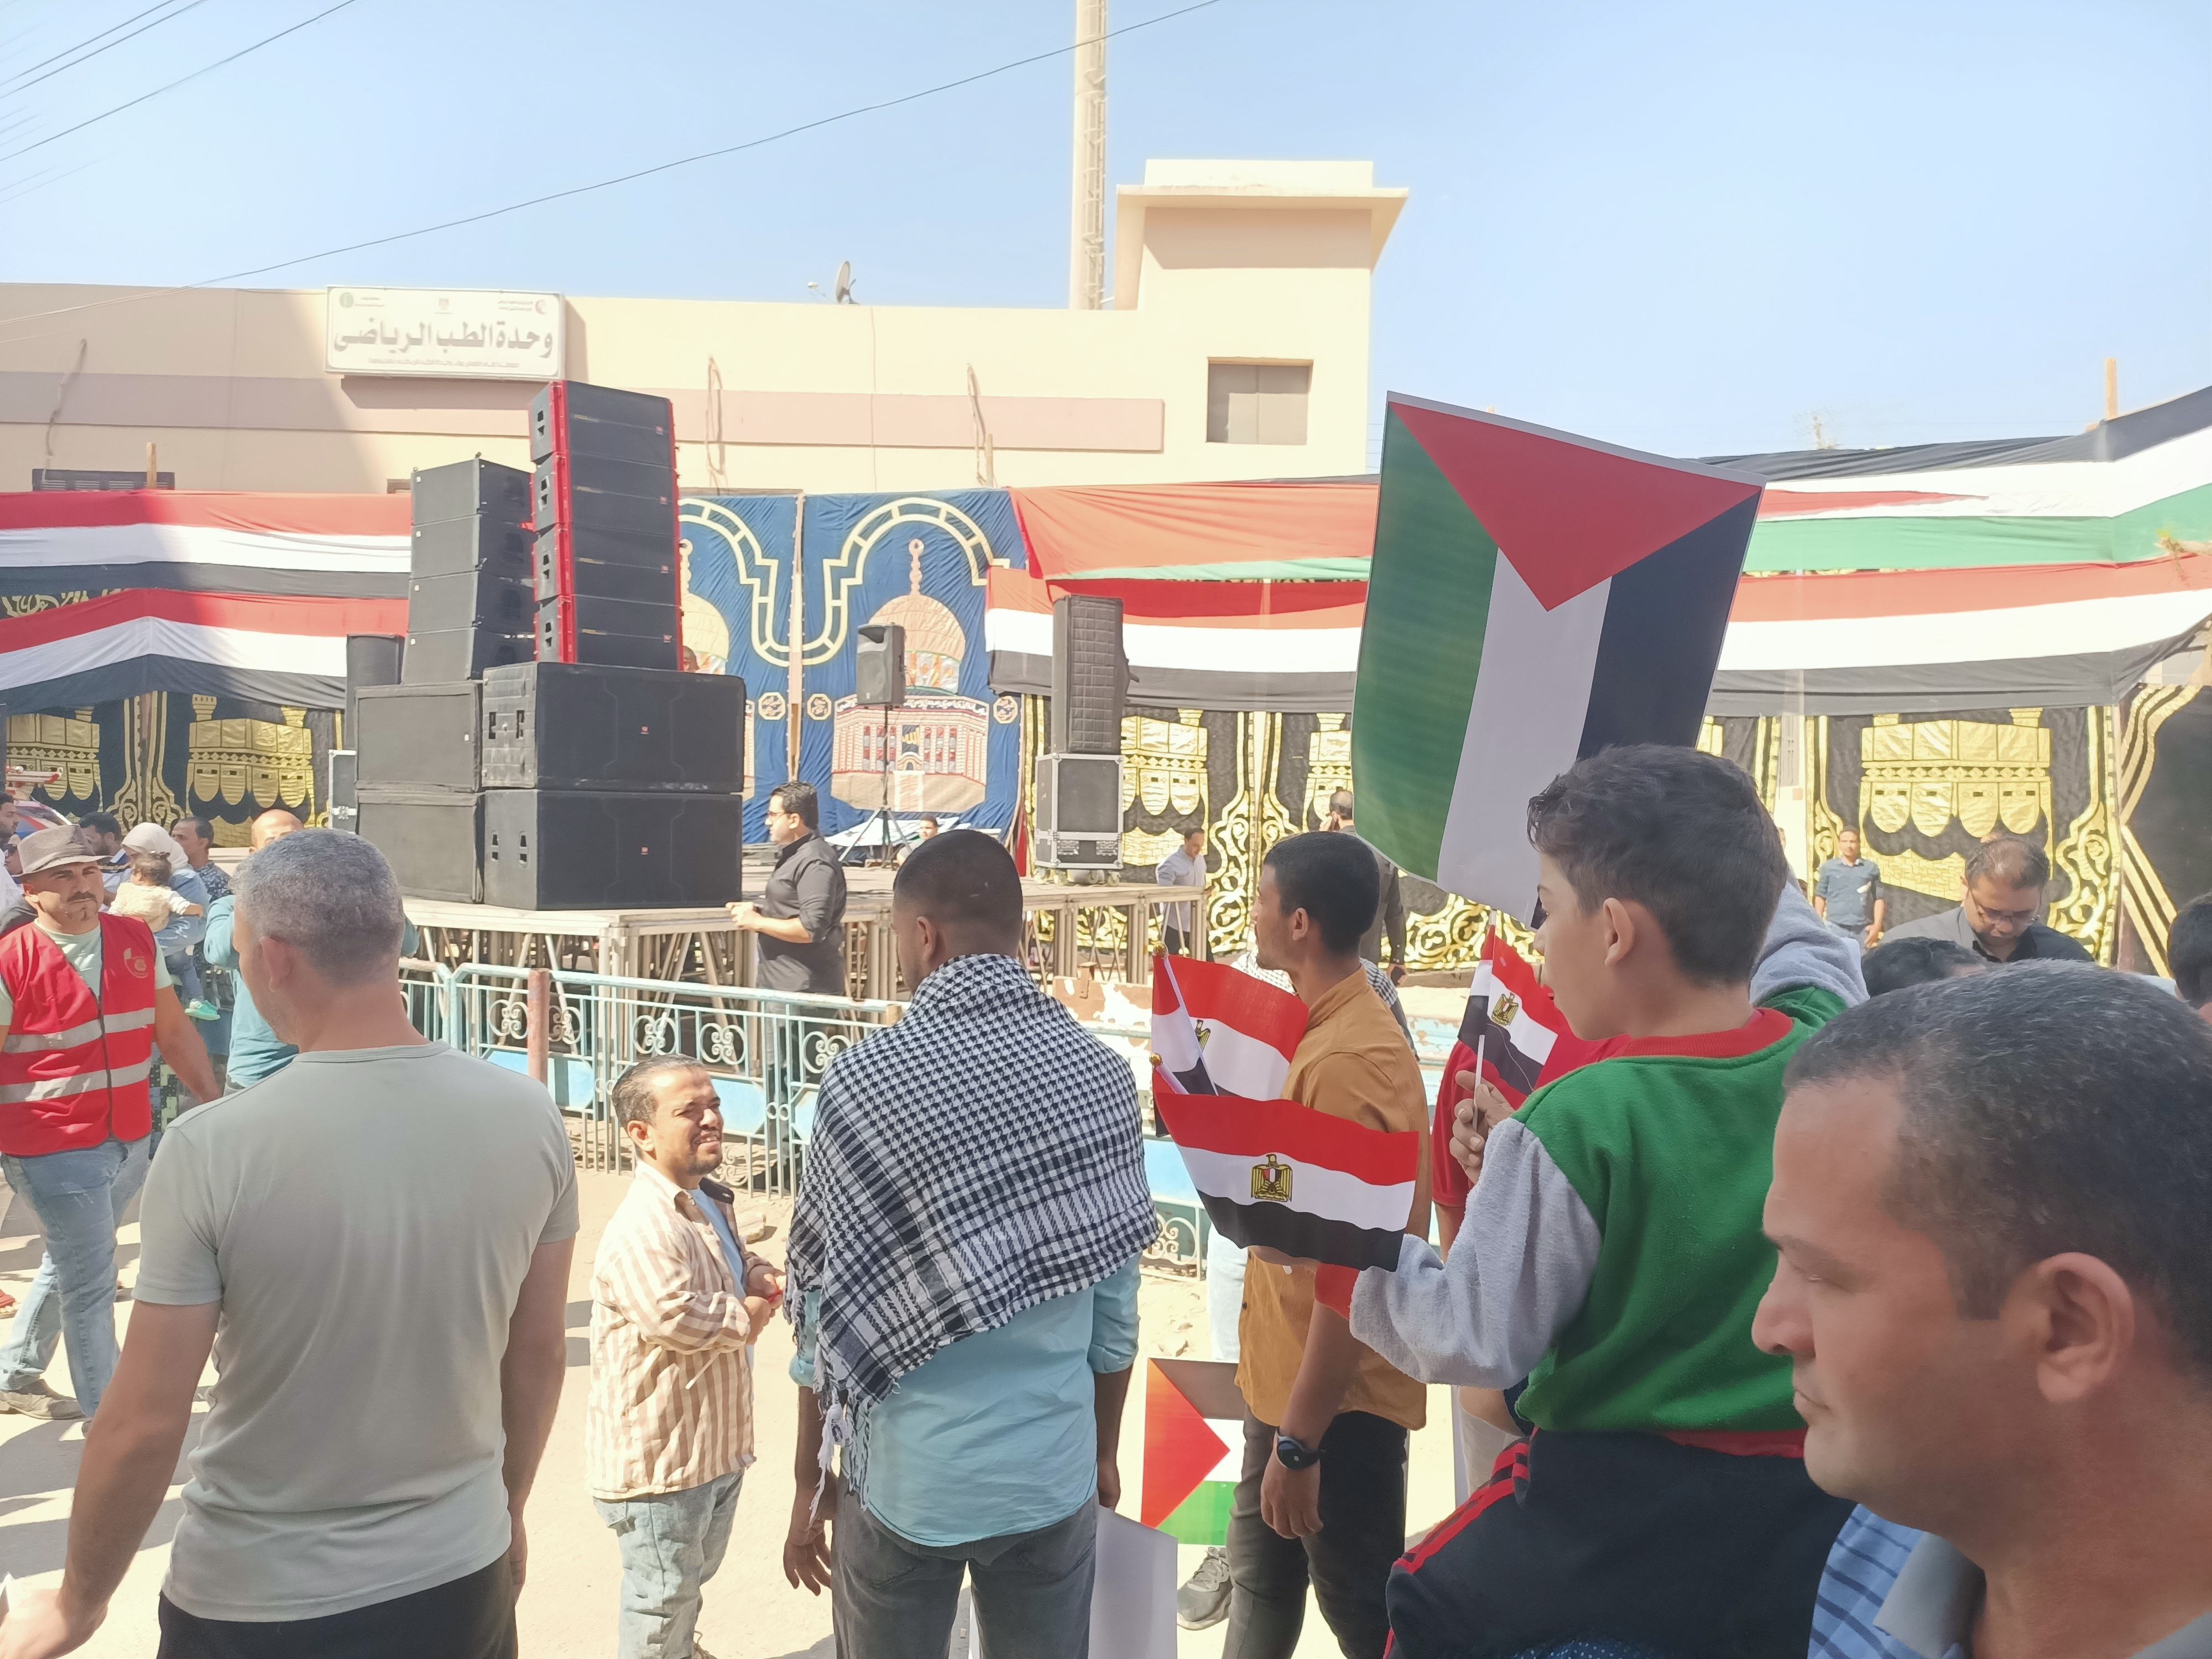 أهالى المنوفية يوزعون أعلام مصر وفلسطين على المشاركين فى الوقفة التضامنية مع الأشقاء الفلسطينيين  (5)